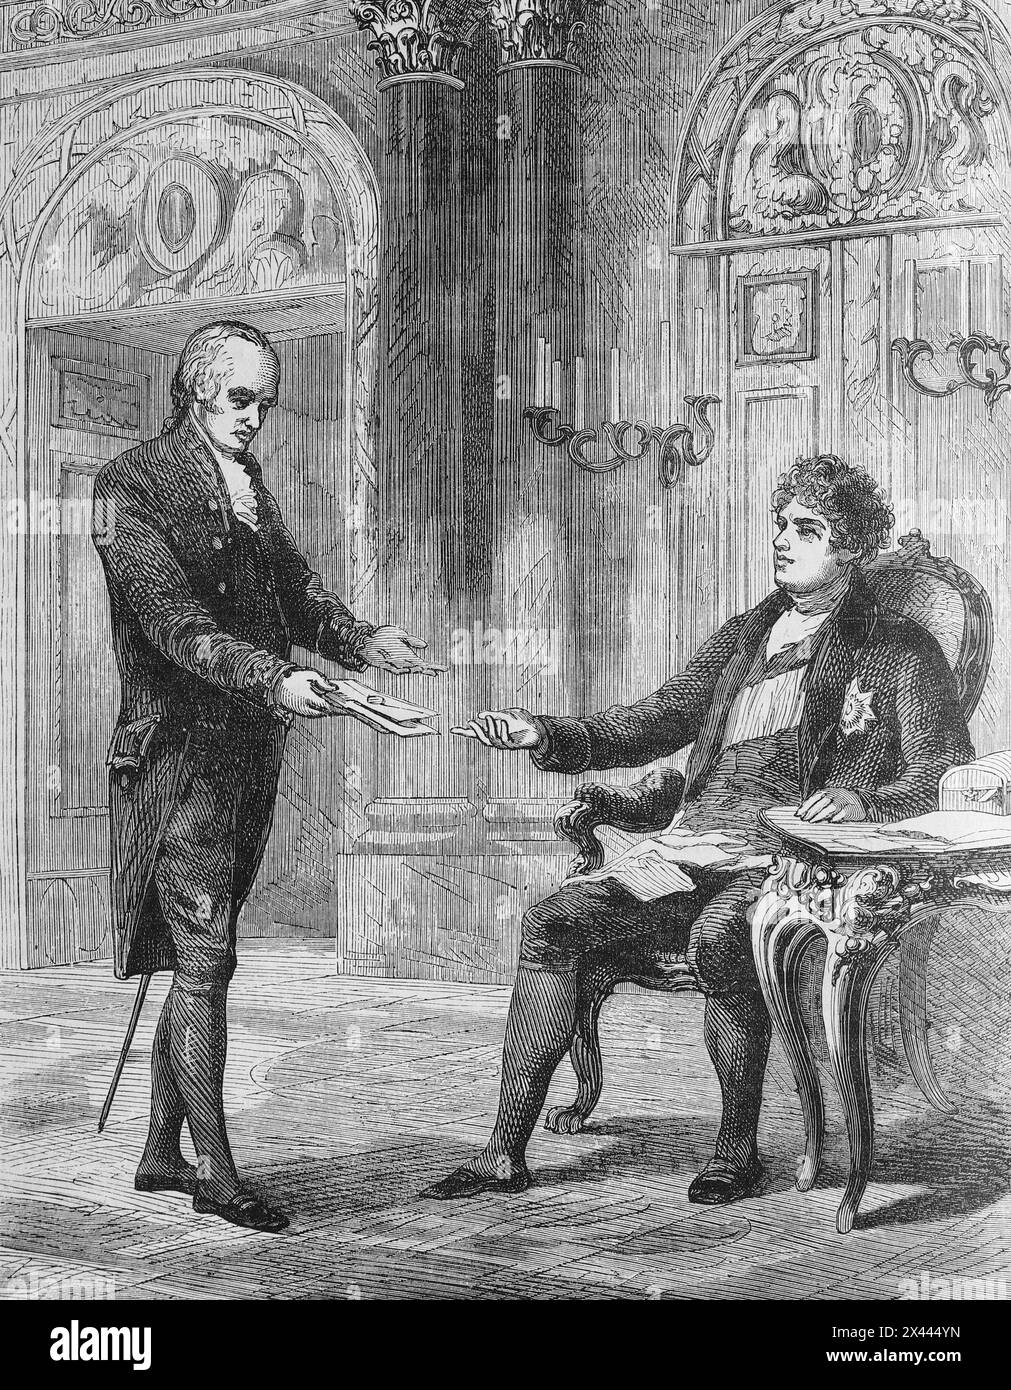 George Canning erhielt seine Ernennung zum Premierminister von König Georg IV. 1827. Illustration aus Cassells Geschichte Englands, Band VII. Neuausgabe um 1873-5. Stockfoto